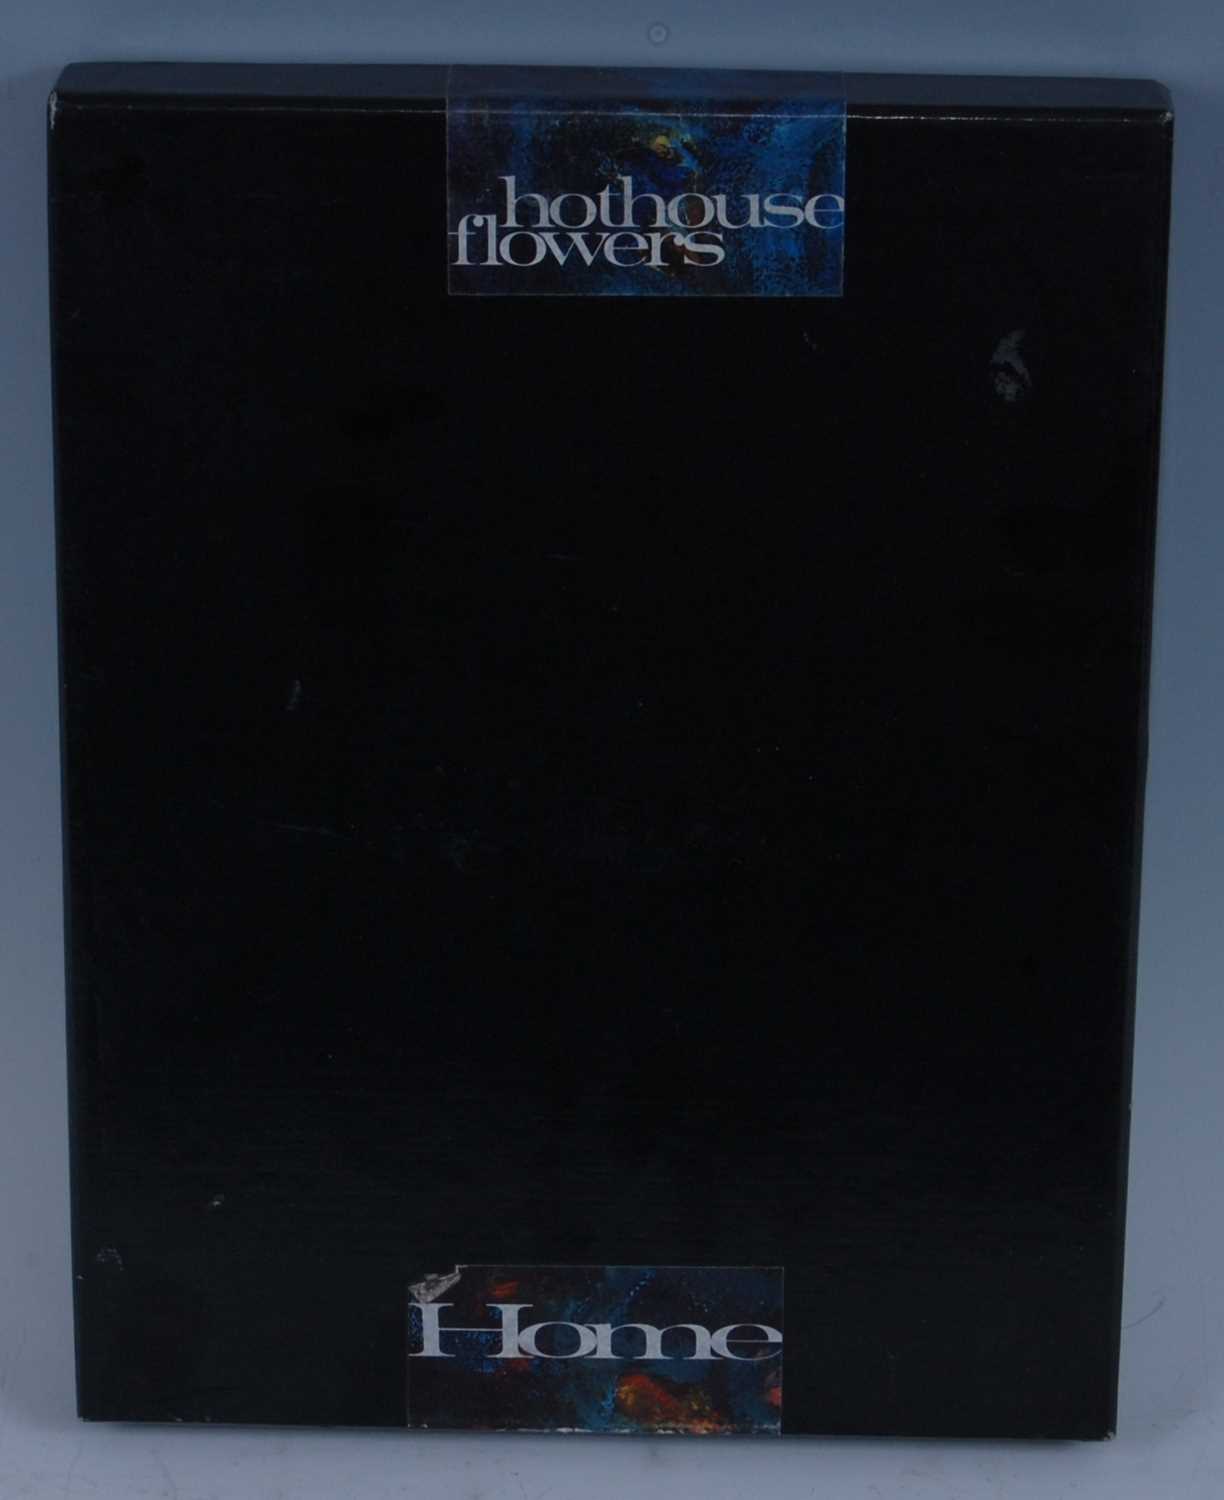 Lot 521 - Hothouse Flowers - Home, 1990 UK promo box set,...